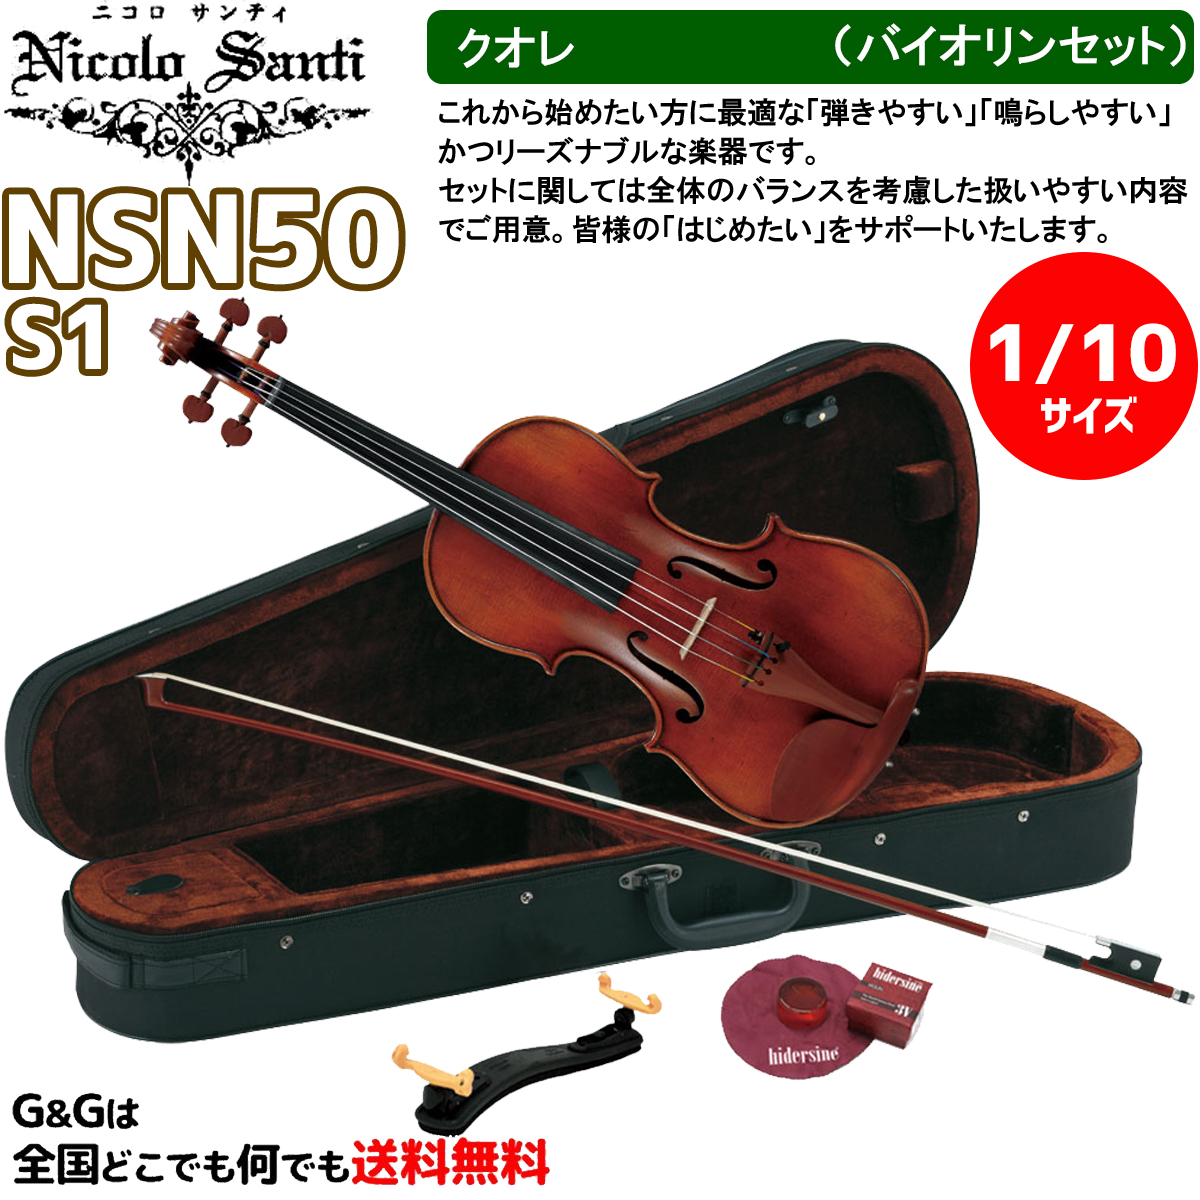 全国宅配無料 バイオリンセット 1 10サイズ ニコロ サンティ クオレ